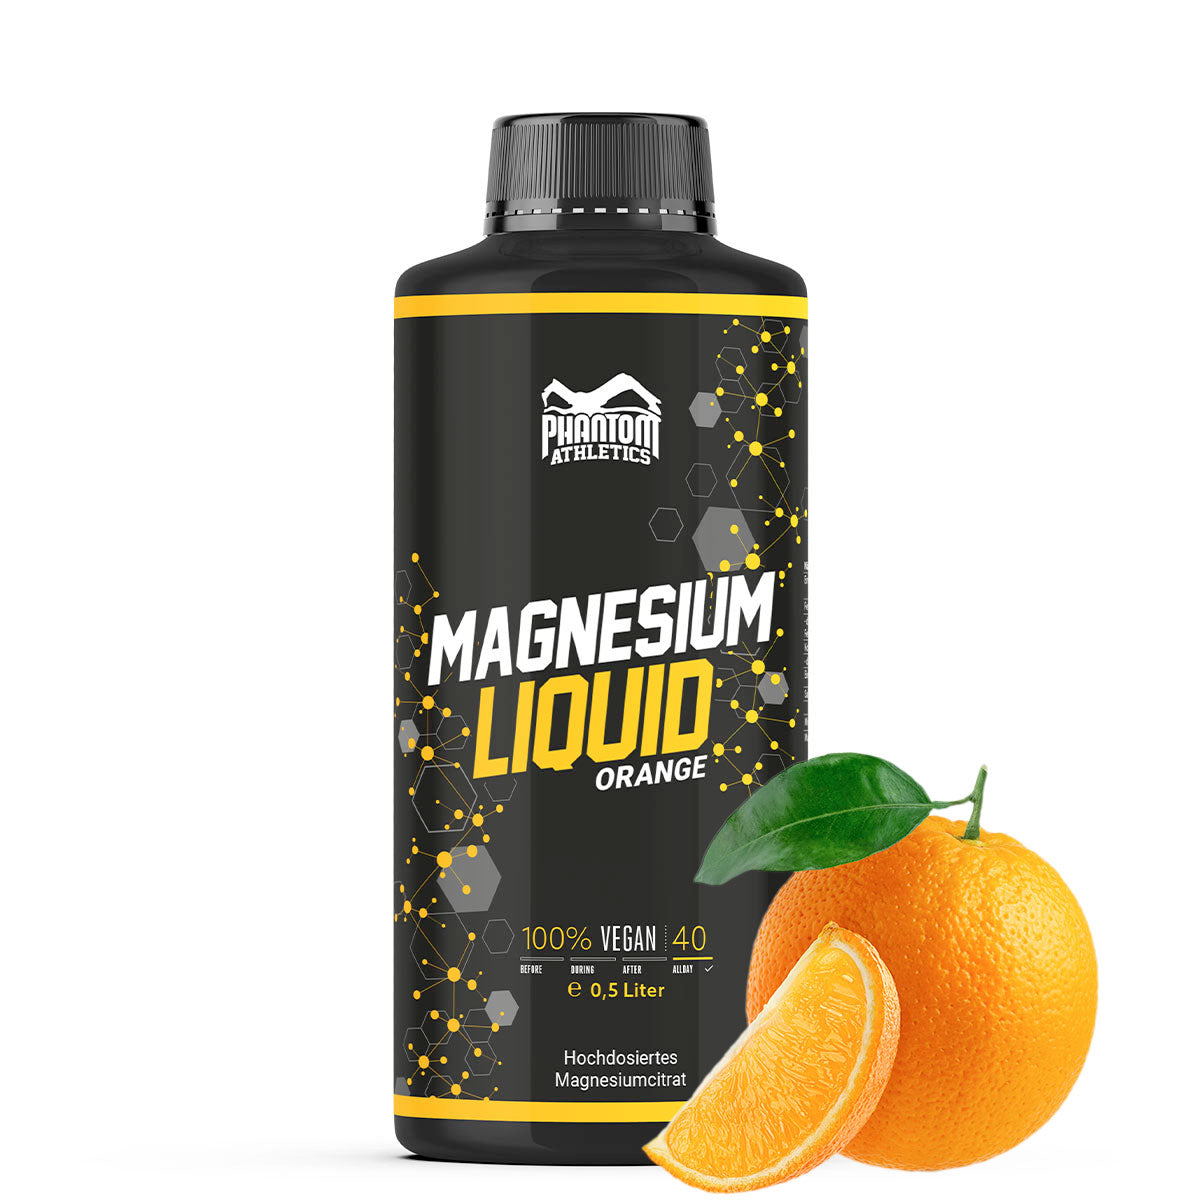 Phantom Magnesium Liquid - Vloeibaar magnesium voor een betere regeneratie in vechtsporten.